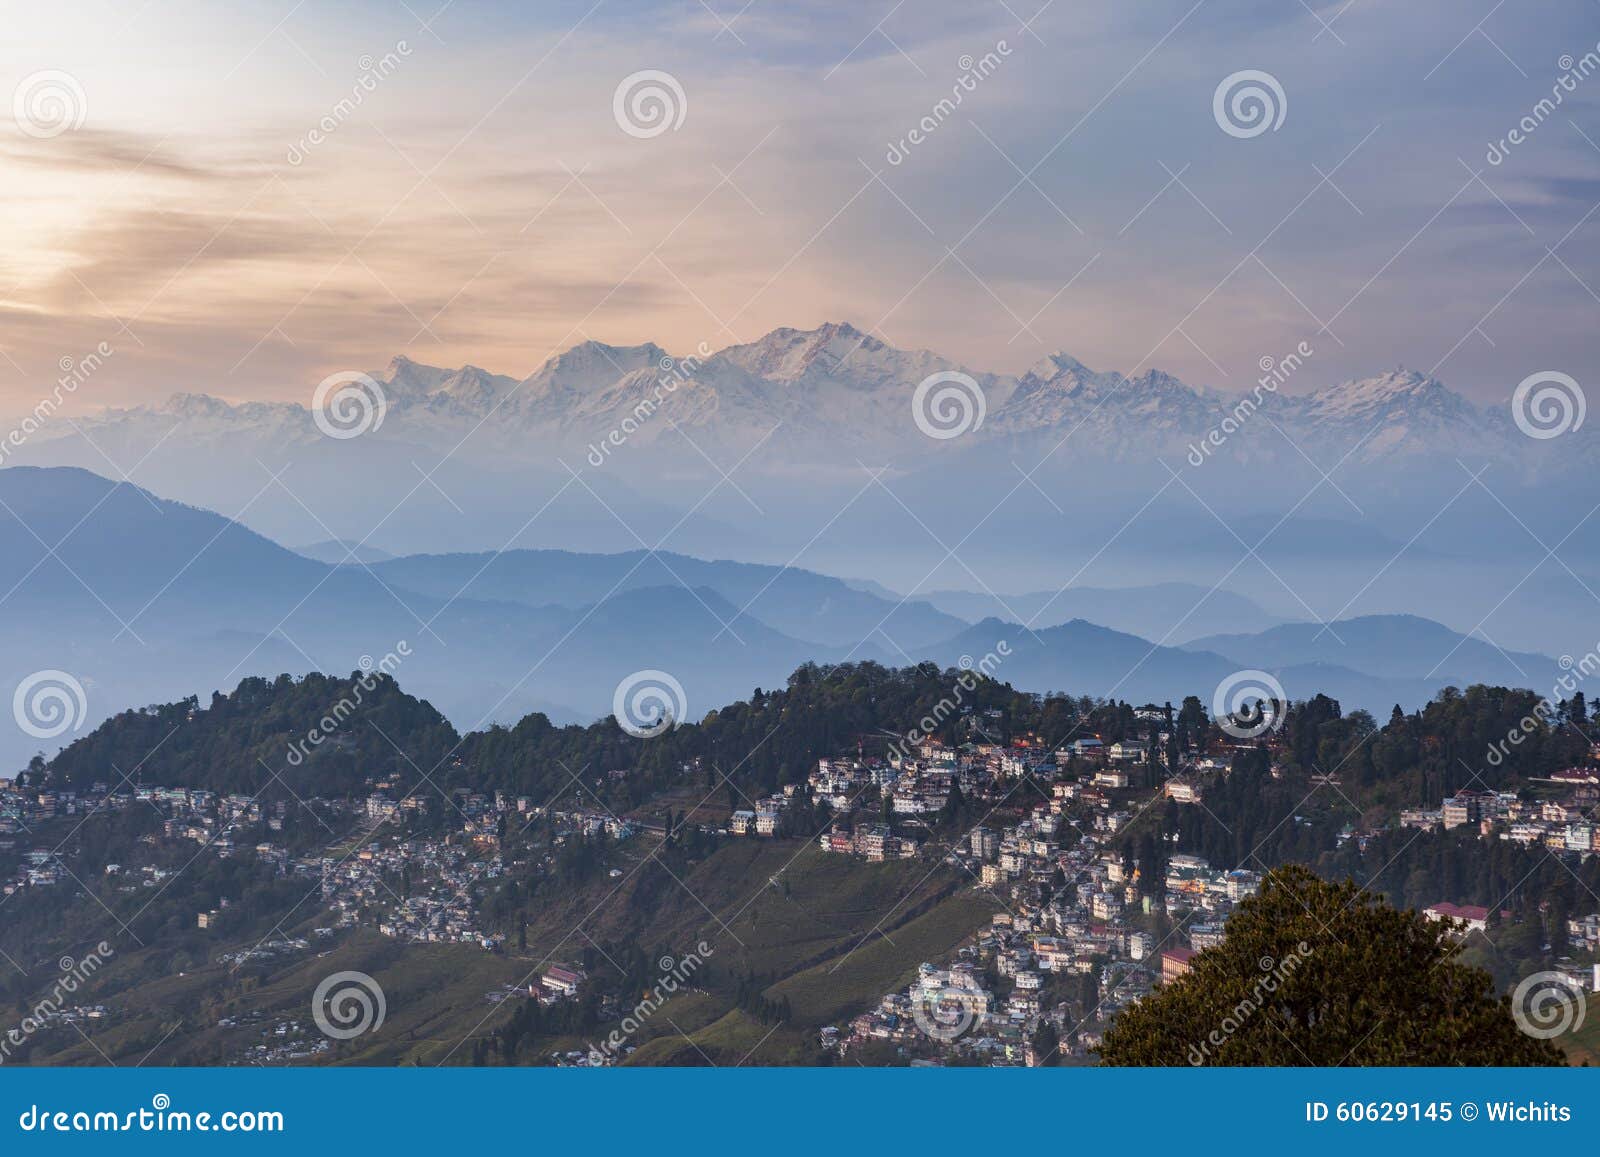 kanchenjunga range peak after sunset with darjeeling town